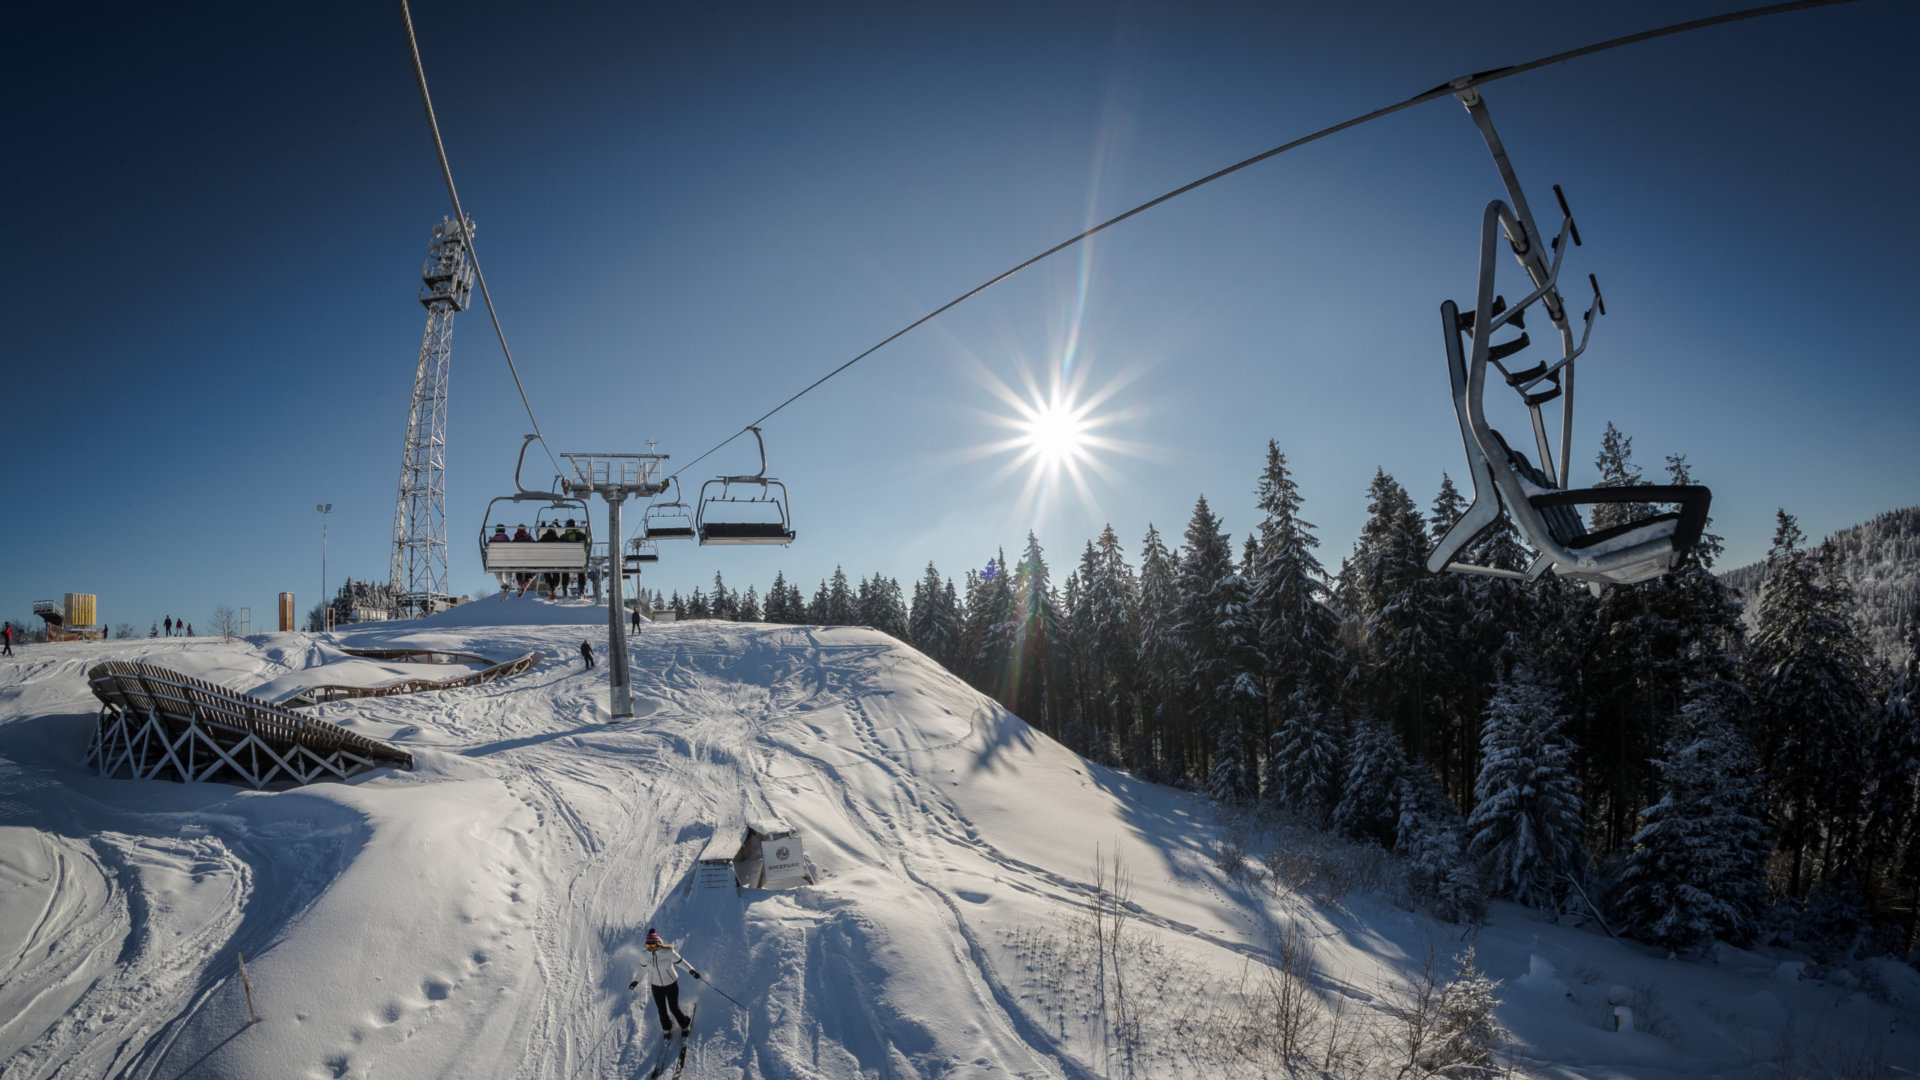 Skiing area Kappe, Skiliftkarussell Winterberg, Ski rental, Winter sports, 1920x1080 Full HD Desktop